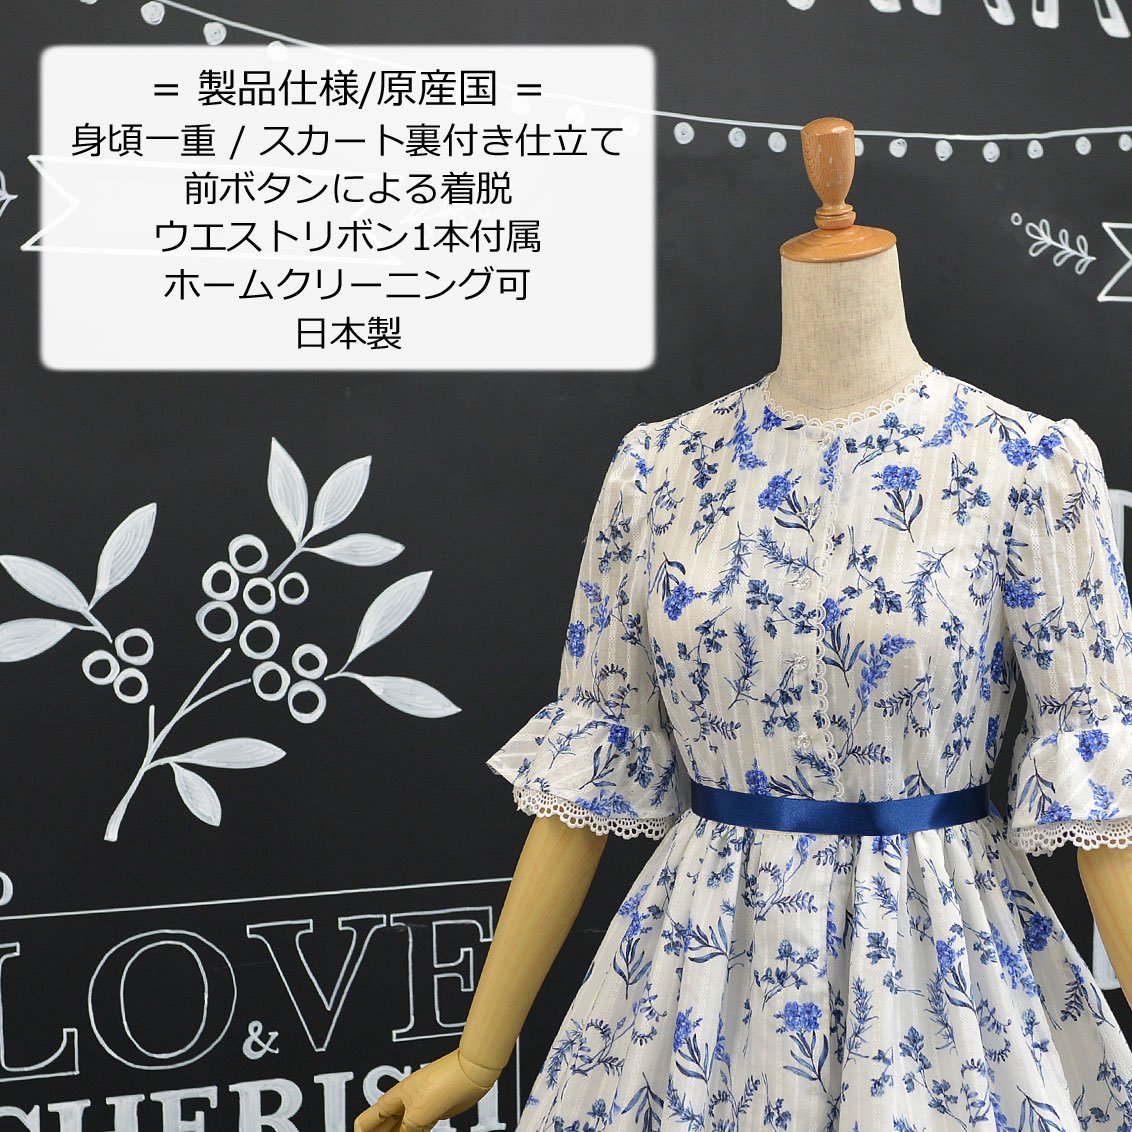 ROSA BIANCA online shop= 野に咲く花のワンピース_ロング丈_7号-13号 =